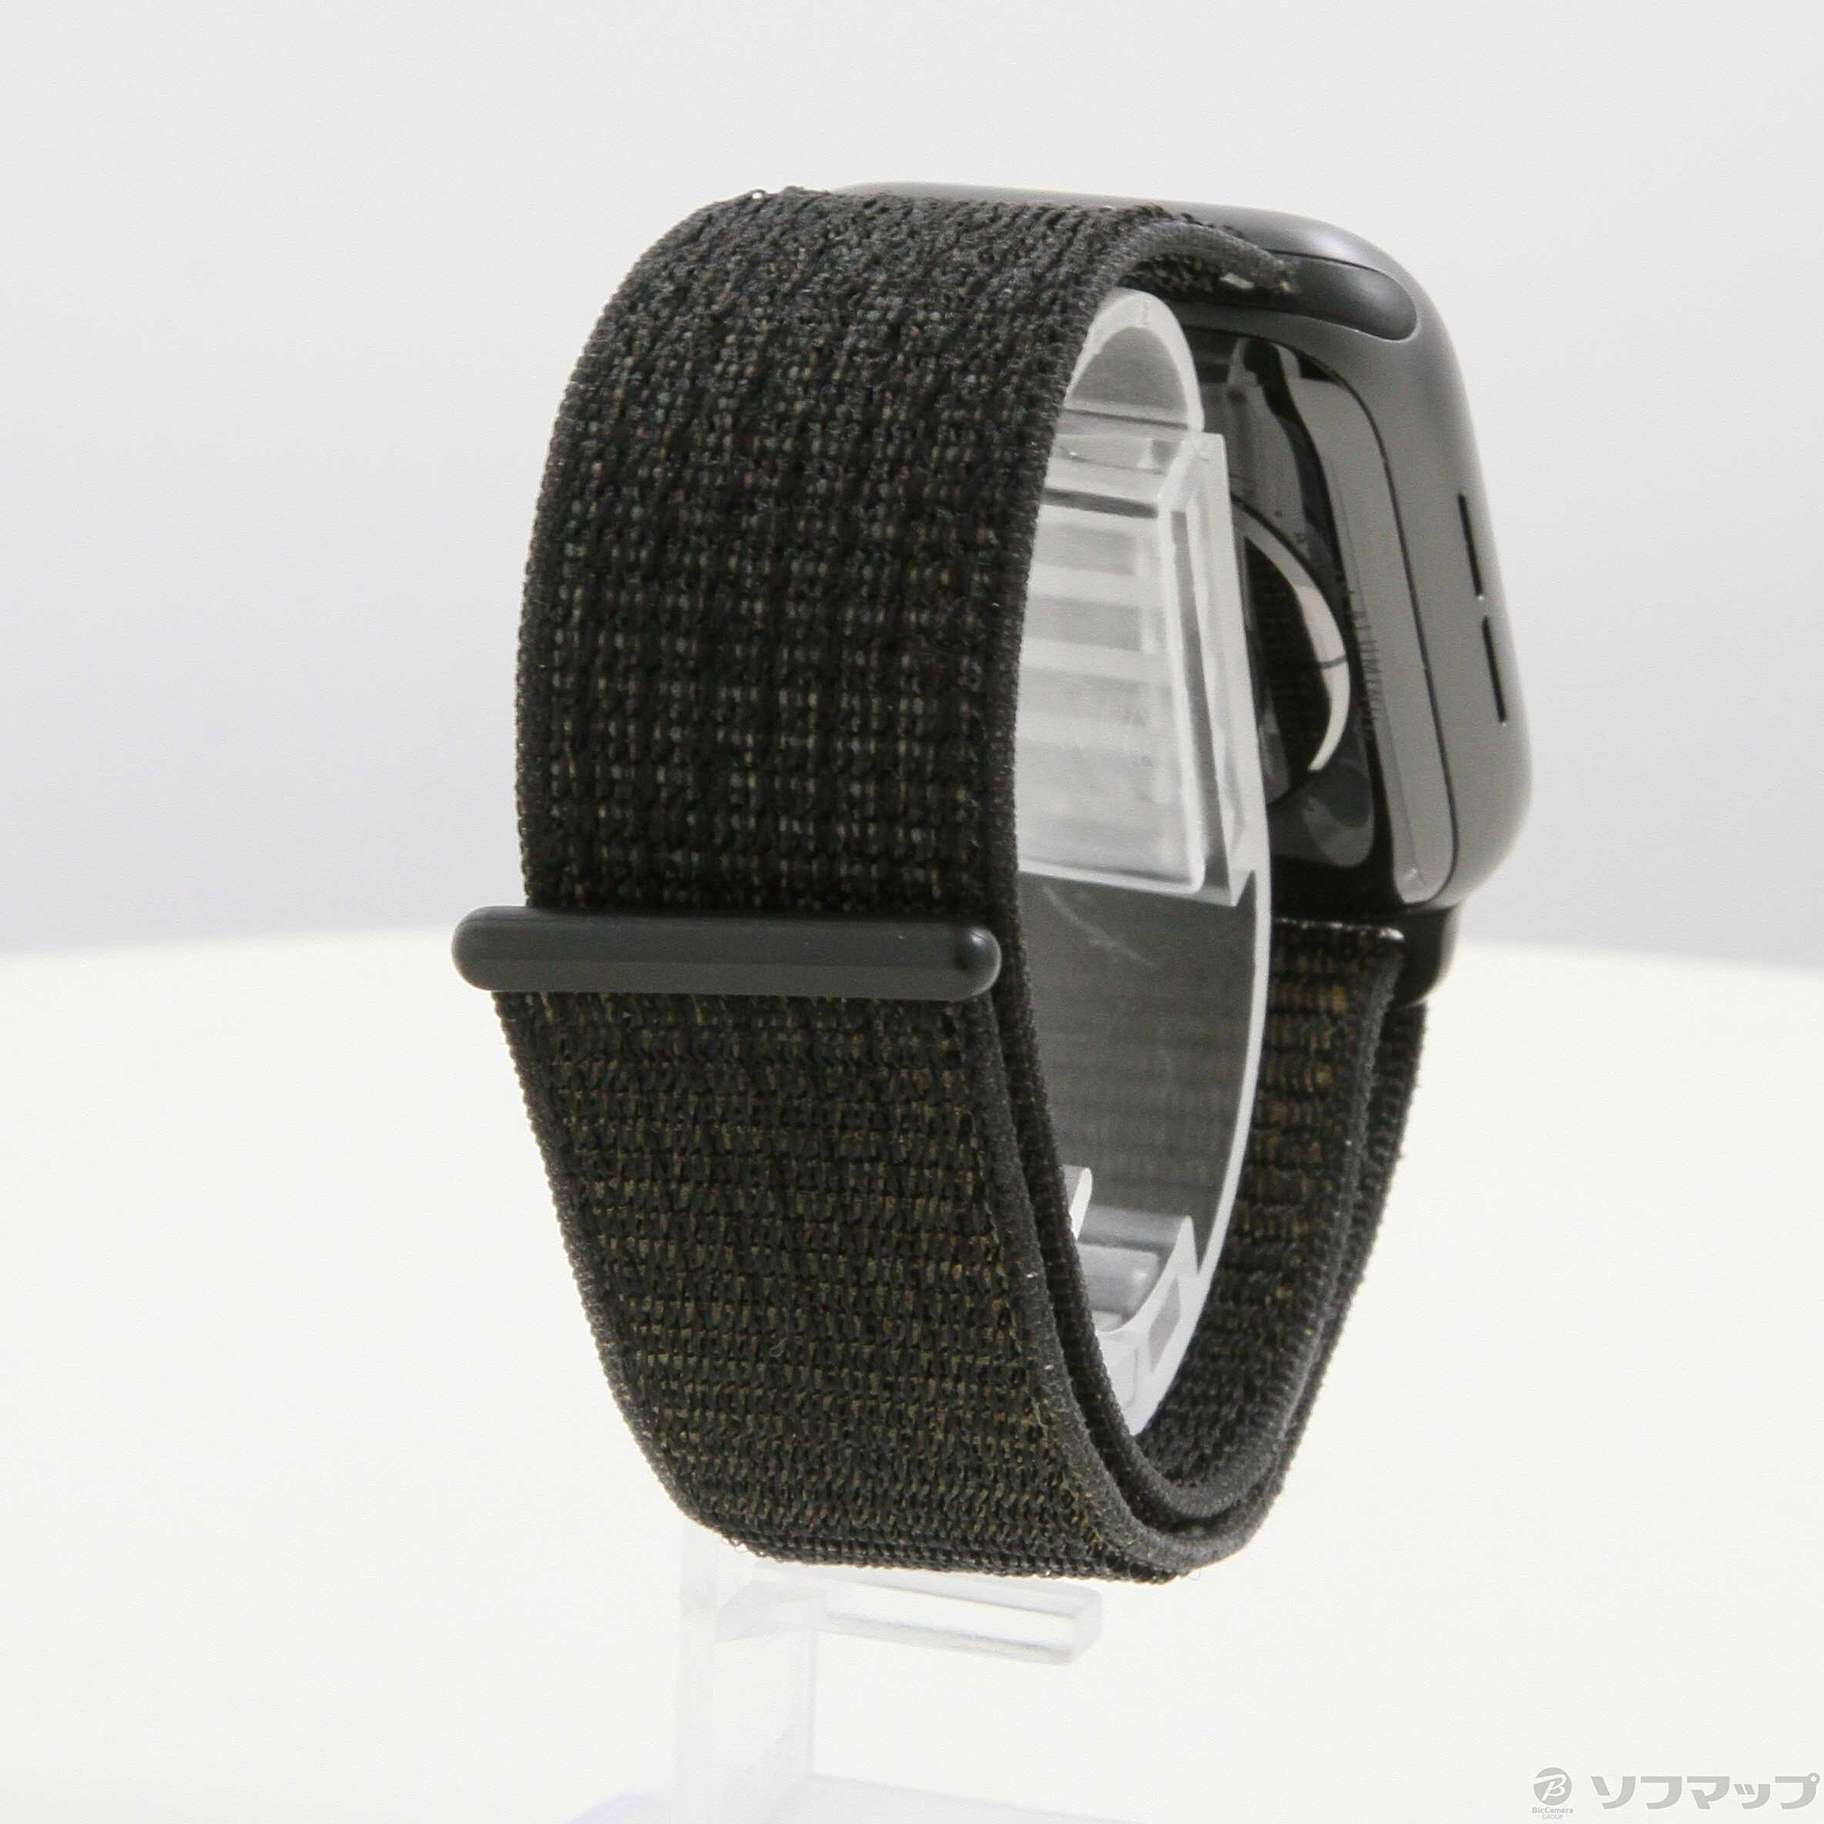 中古】Apple Watch Series 4 Nike+ GPS 44mm スペースグレイ